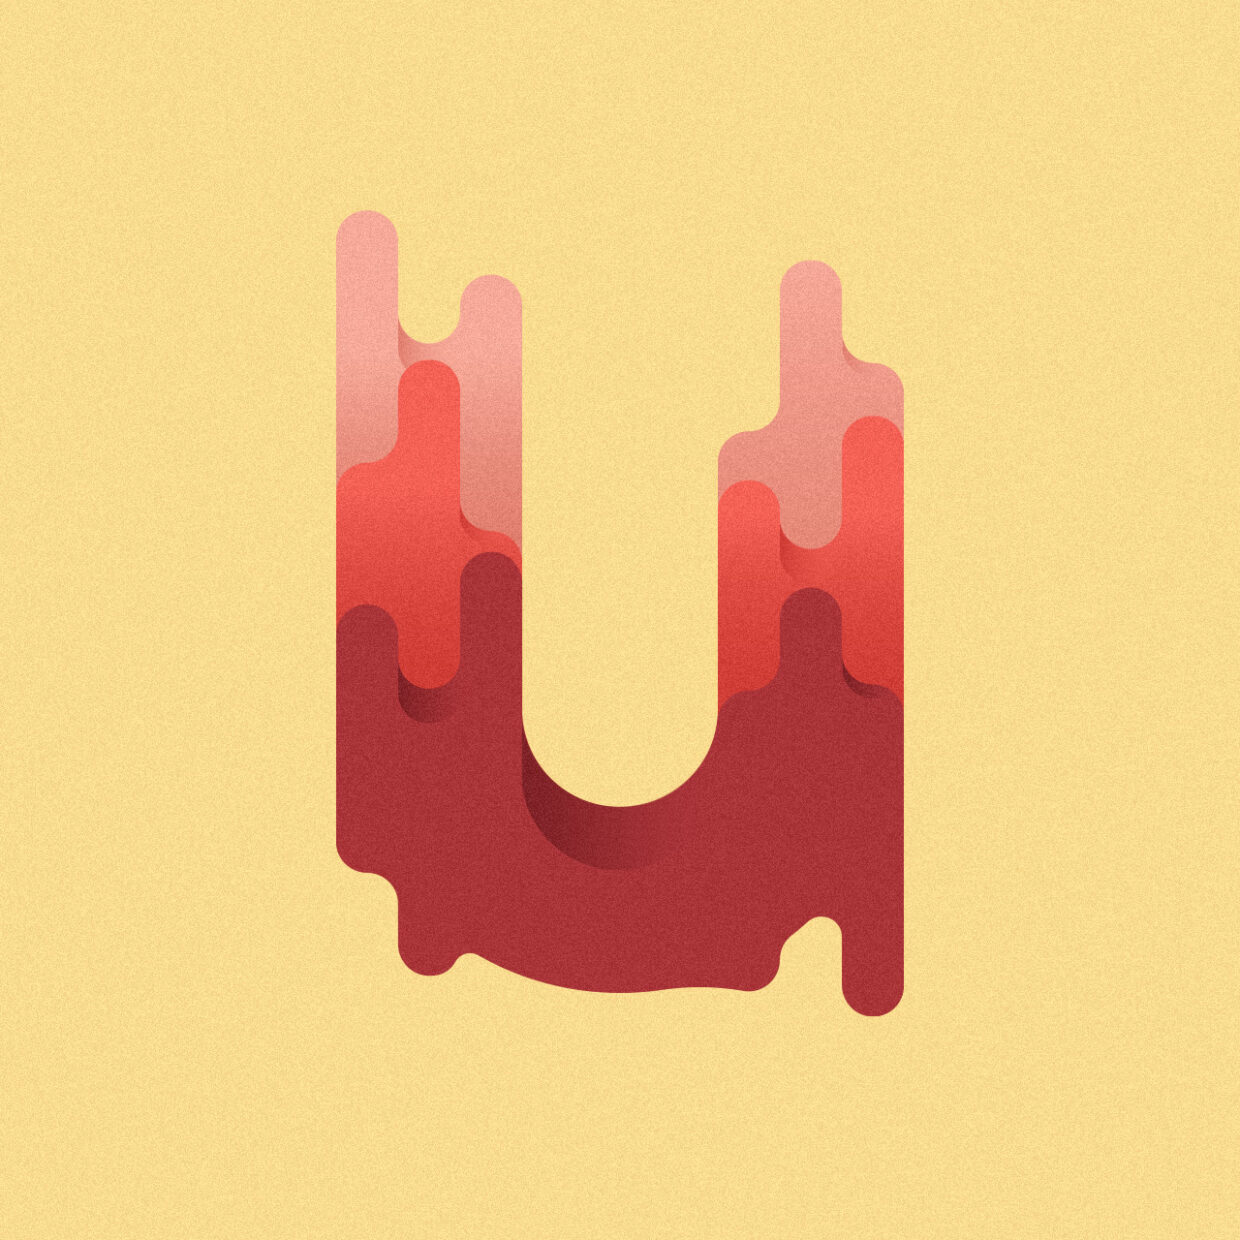 Illustration of a melted letter U